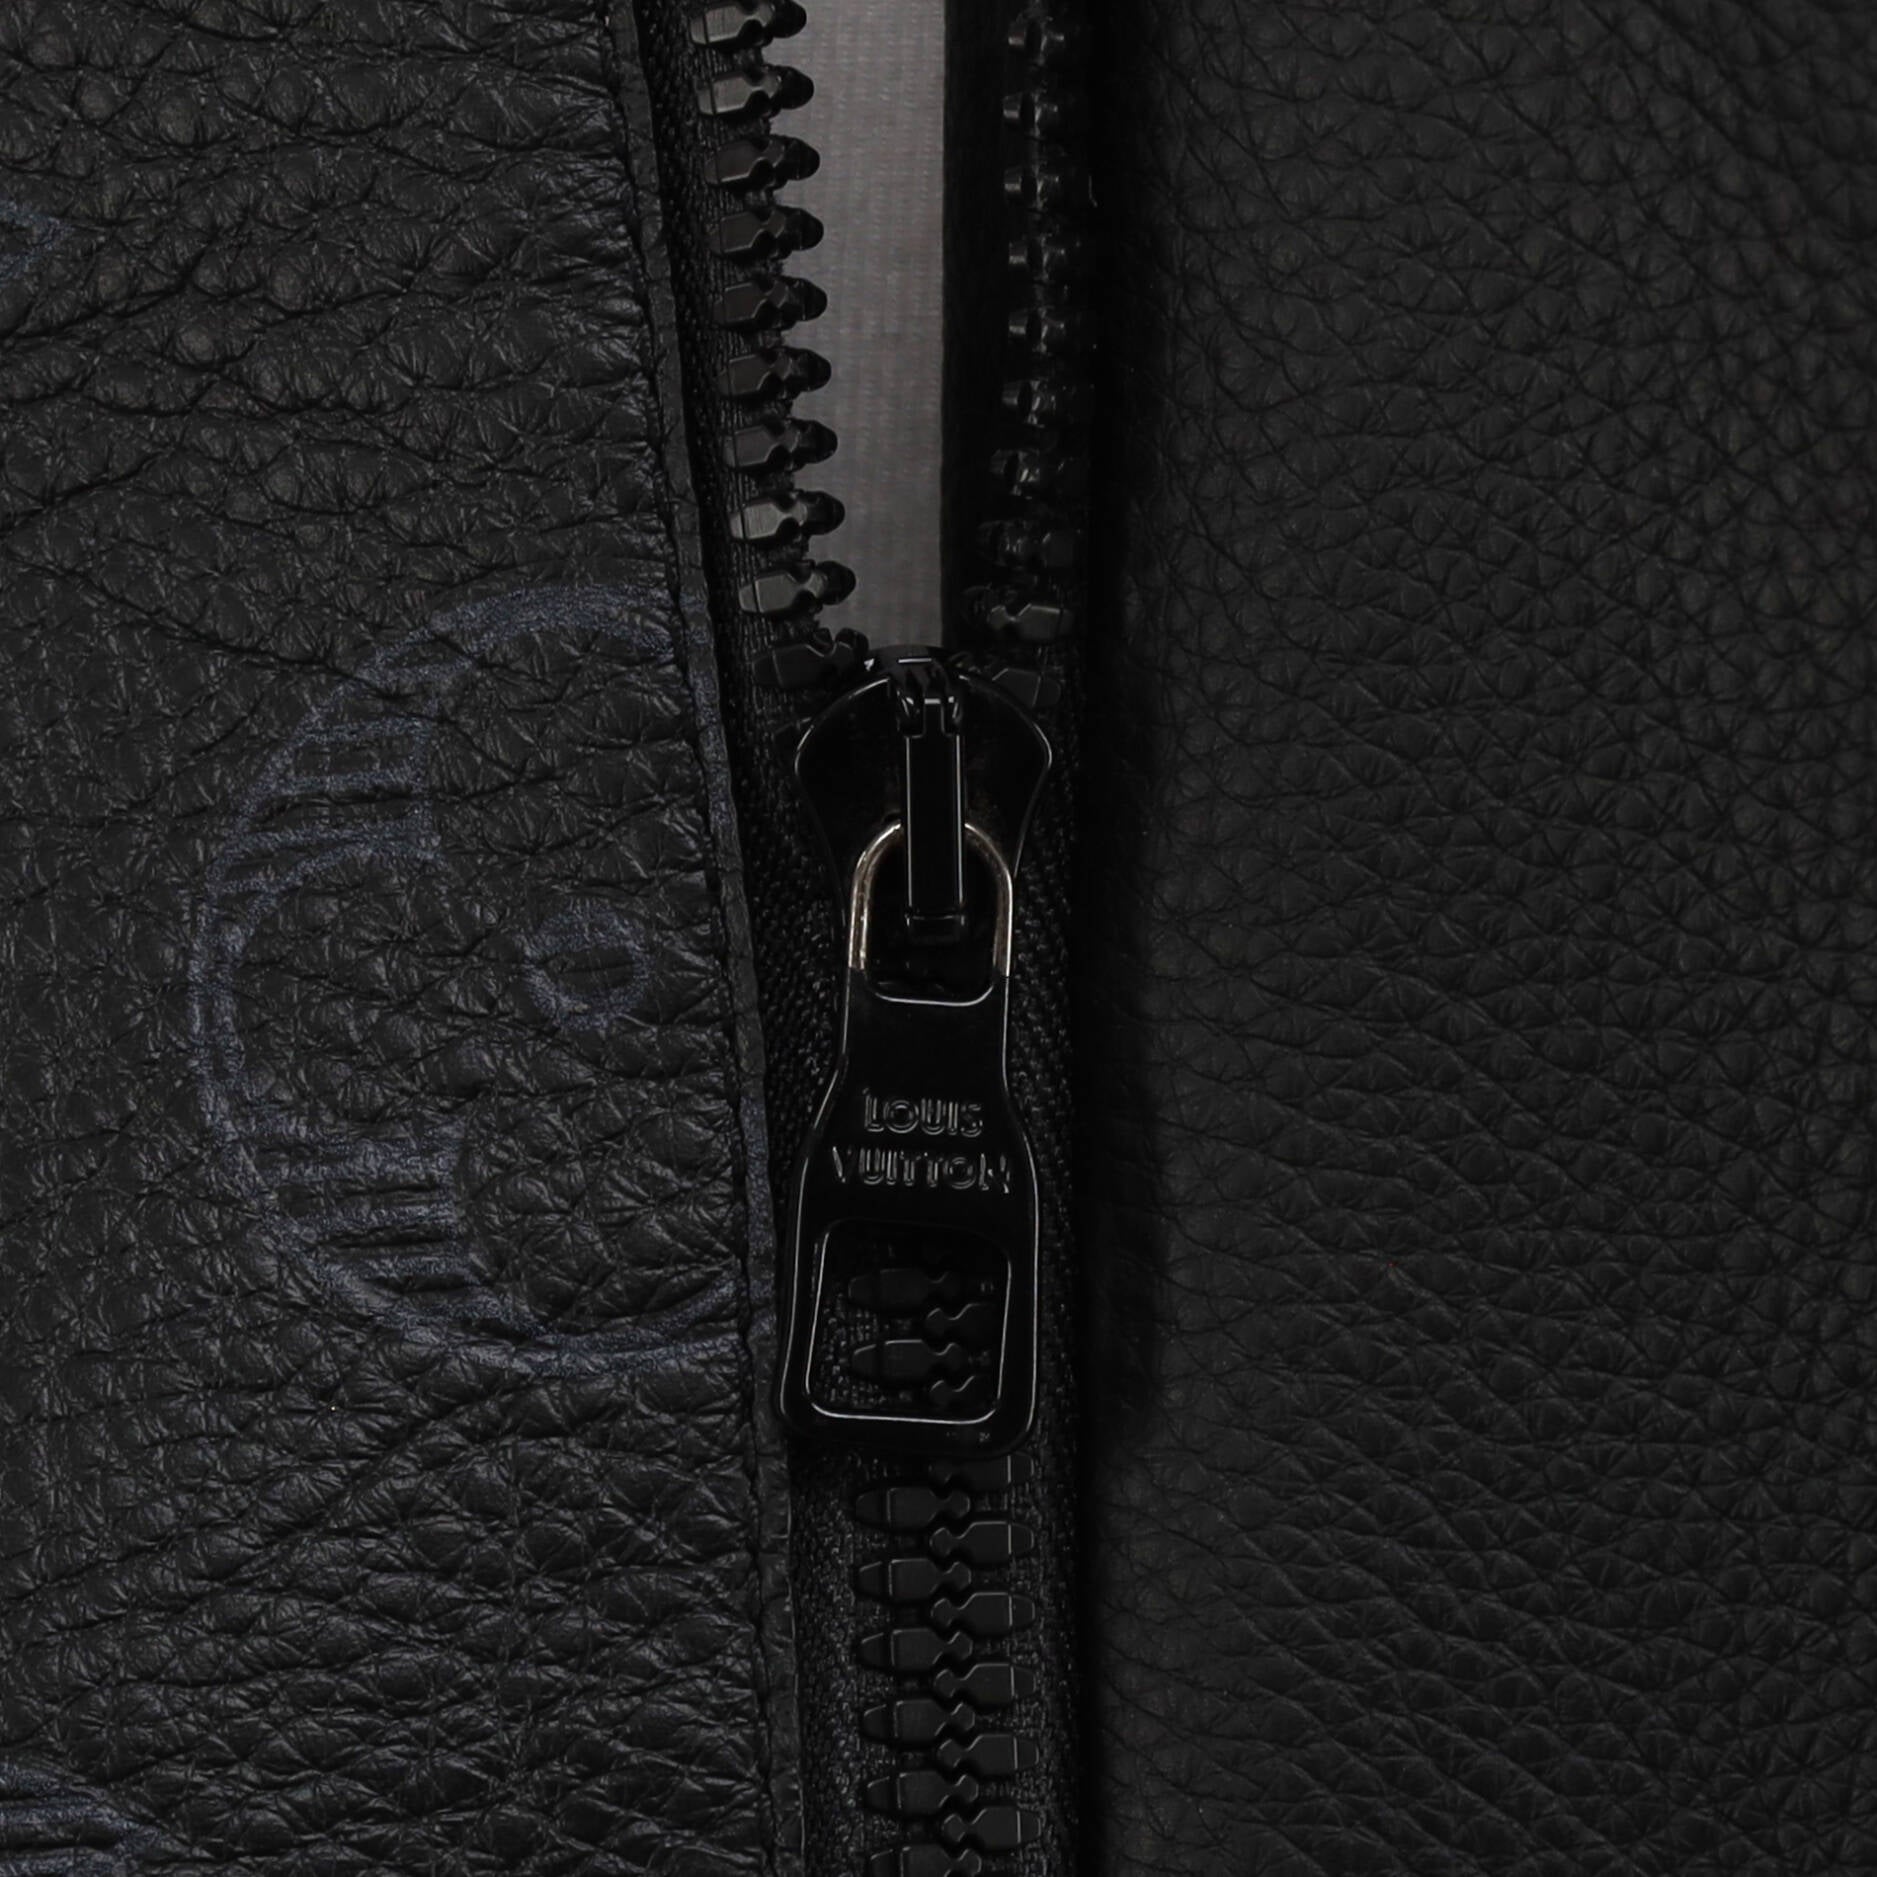 Louis Vuitton Black Leather Cropped Zip Front Jacket M Louis Vuitton